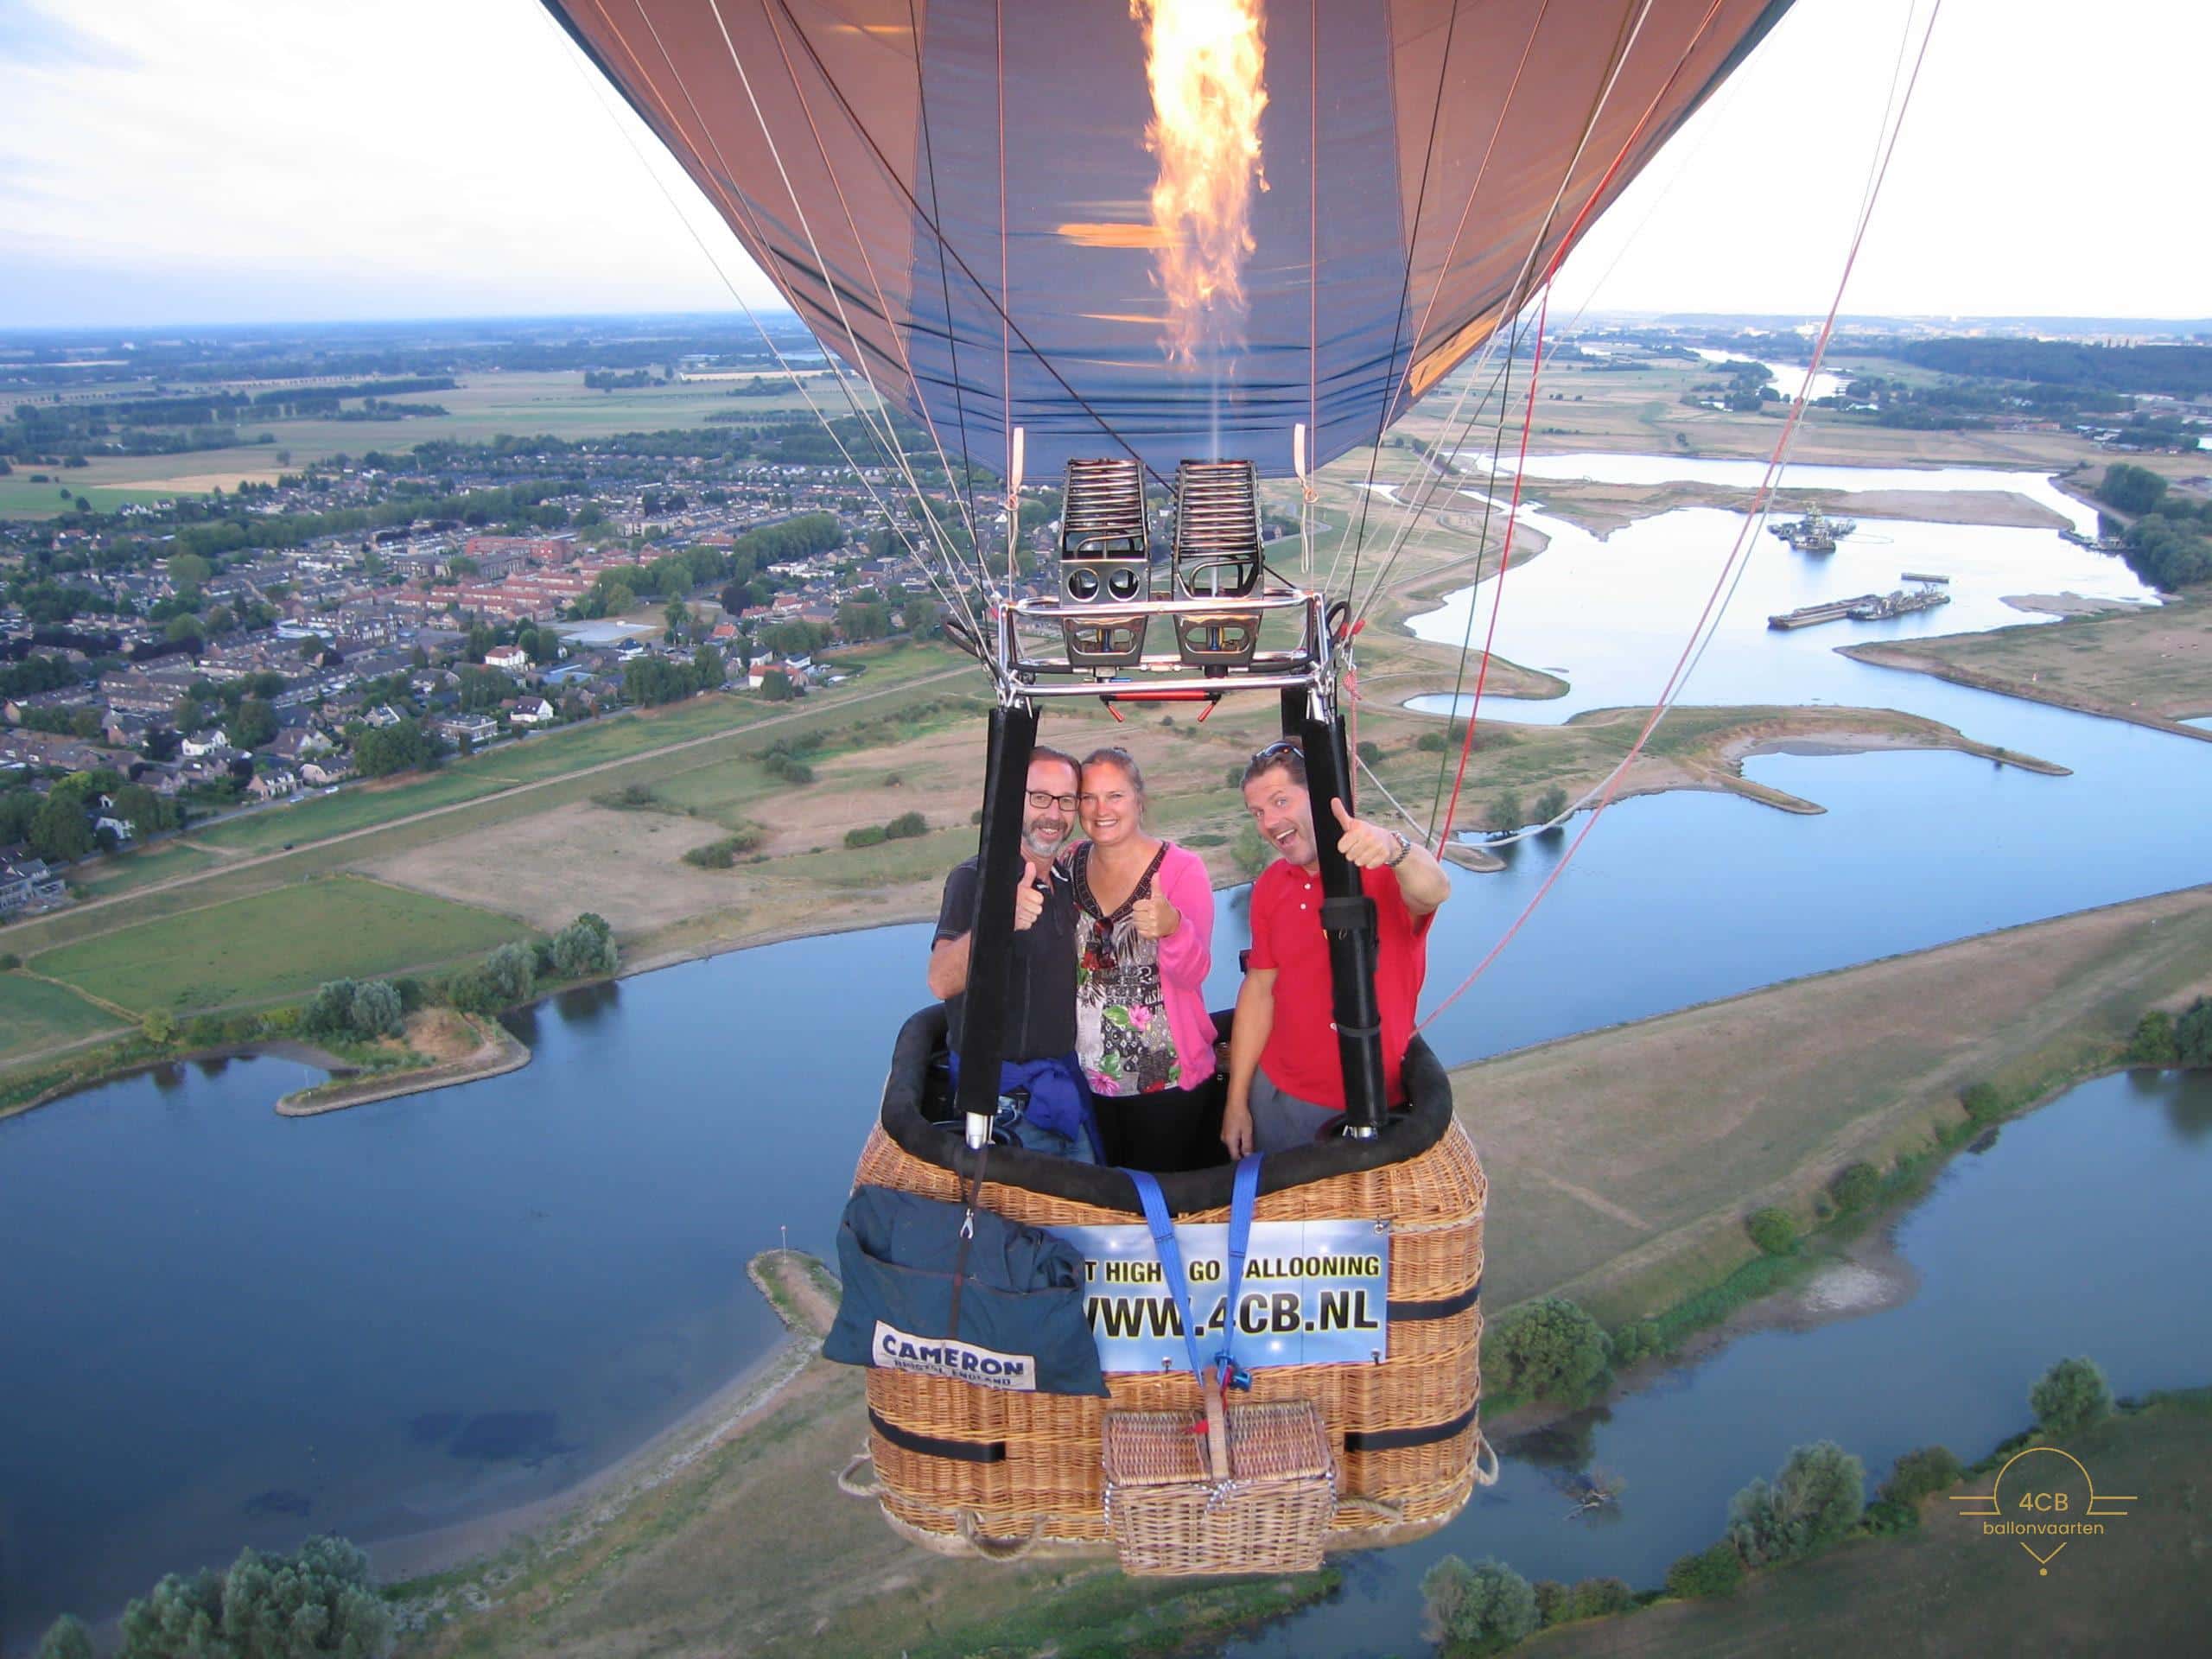 priveballonvaarten, unieke foto, in de lucht foto, selfie maken, heteluchtballon